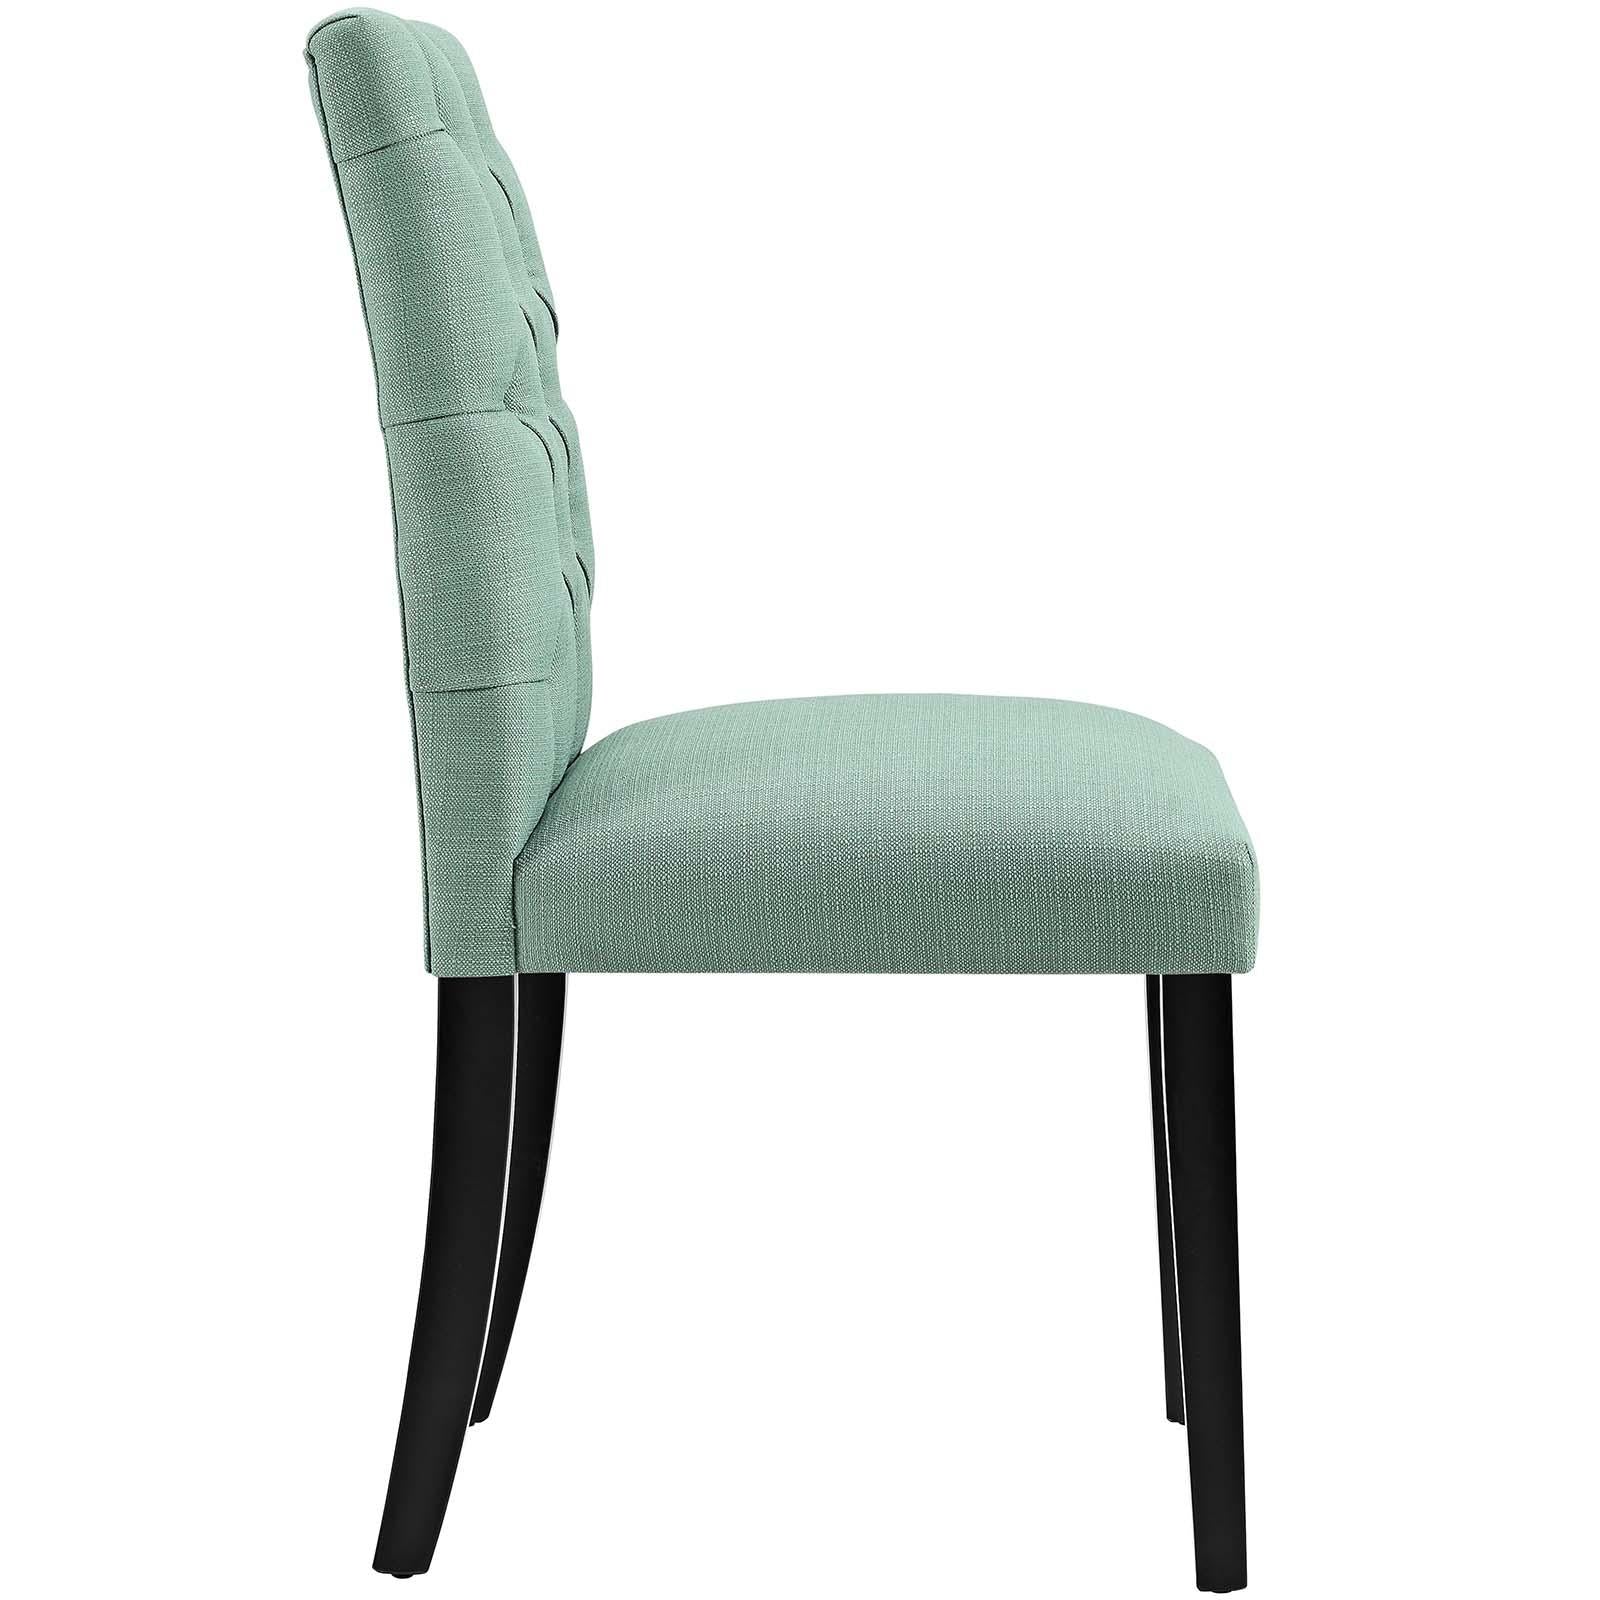 Modway Furniture Modern Duchess Dining Chair Fabric Set of 4 - EEI-3475